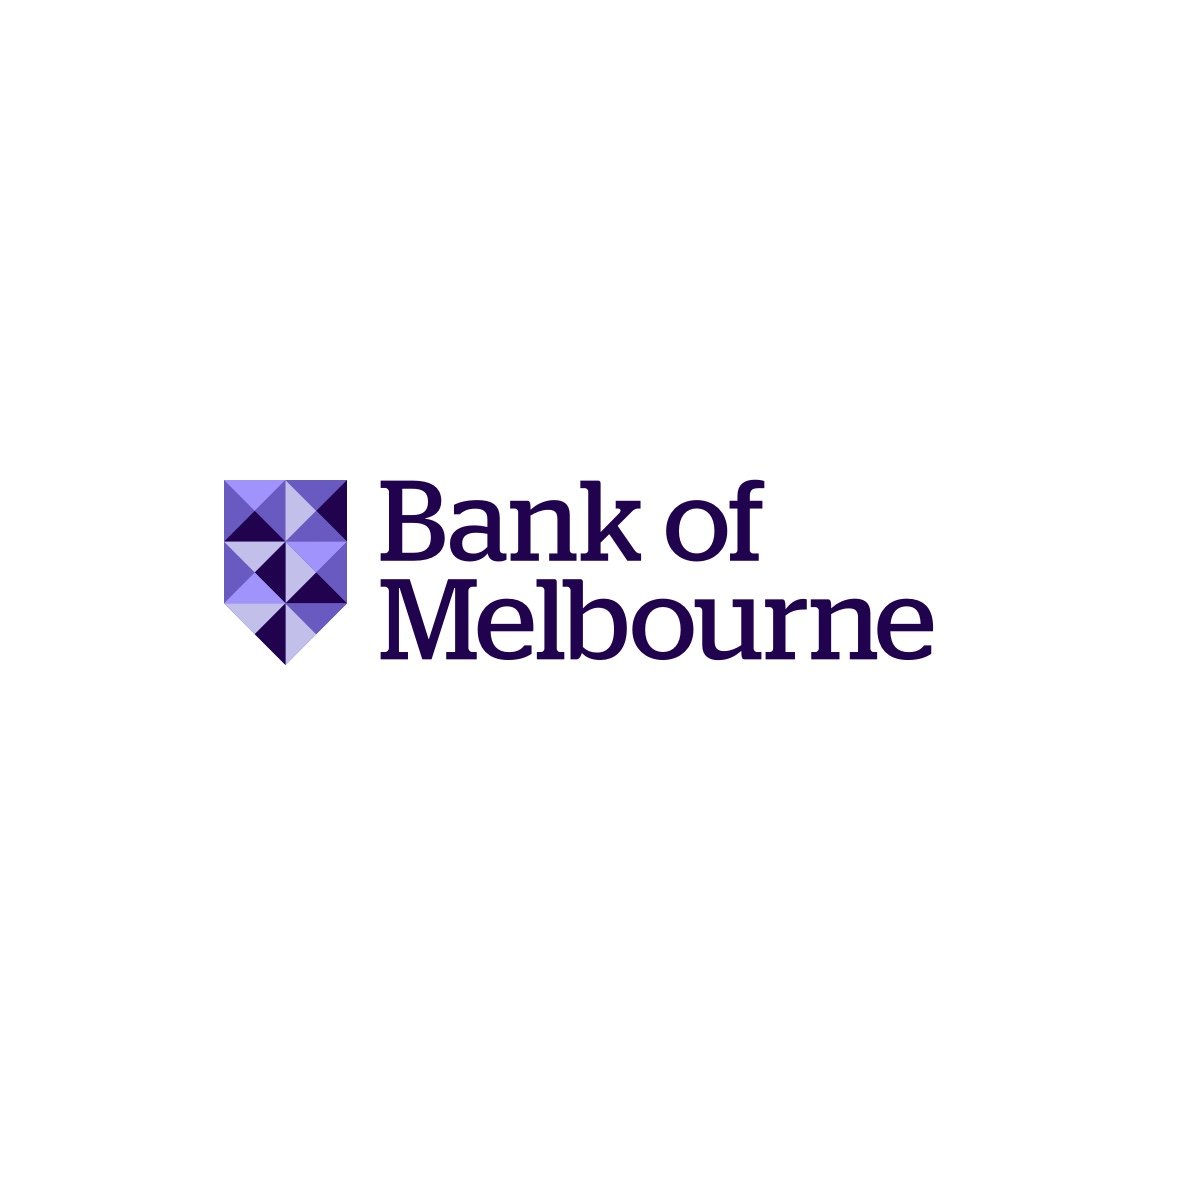 Bank of Melbourne.jpg